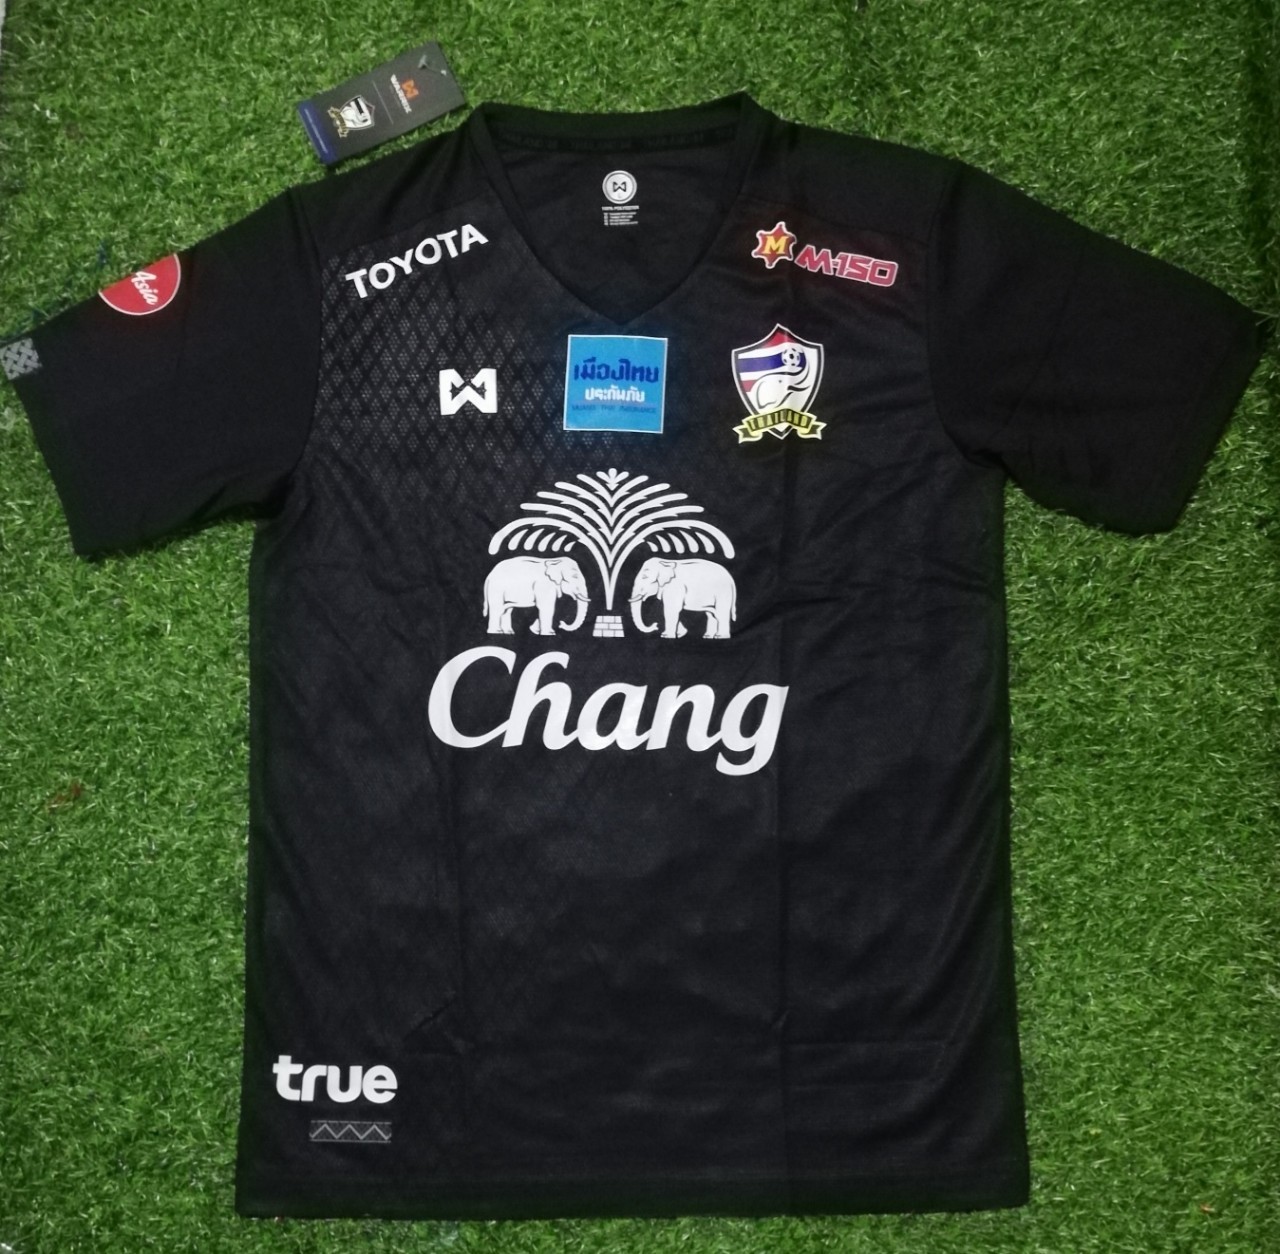 Warrix ของแท้ เสื้อฟุตบอล เสื้อ ซ้อม ทีมชาติไทย ช้างศึก สีดำ สวยงามน่าสะสม เสื้อกีฬา ของใหม่ ฟูลสปอนเซอร์